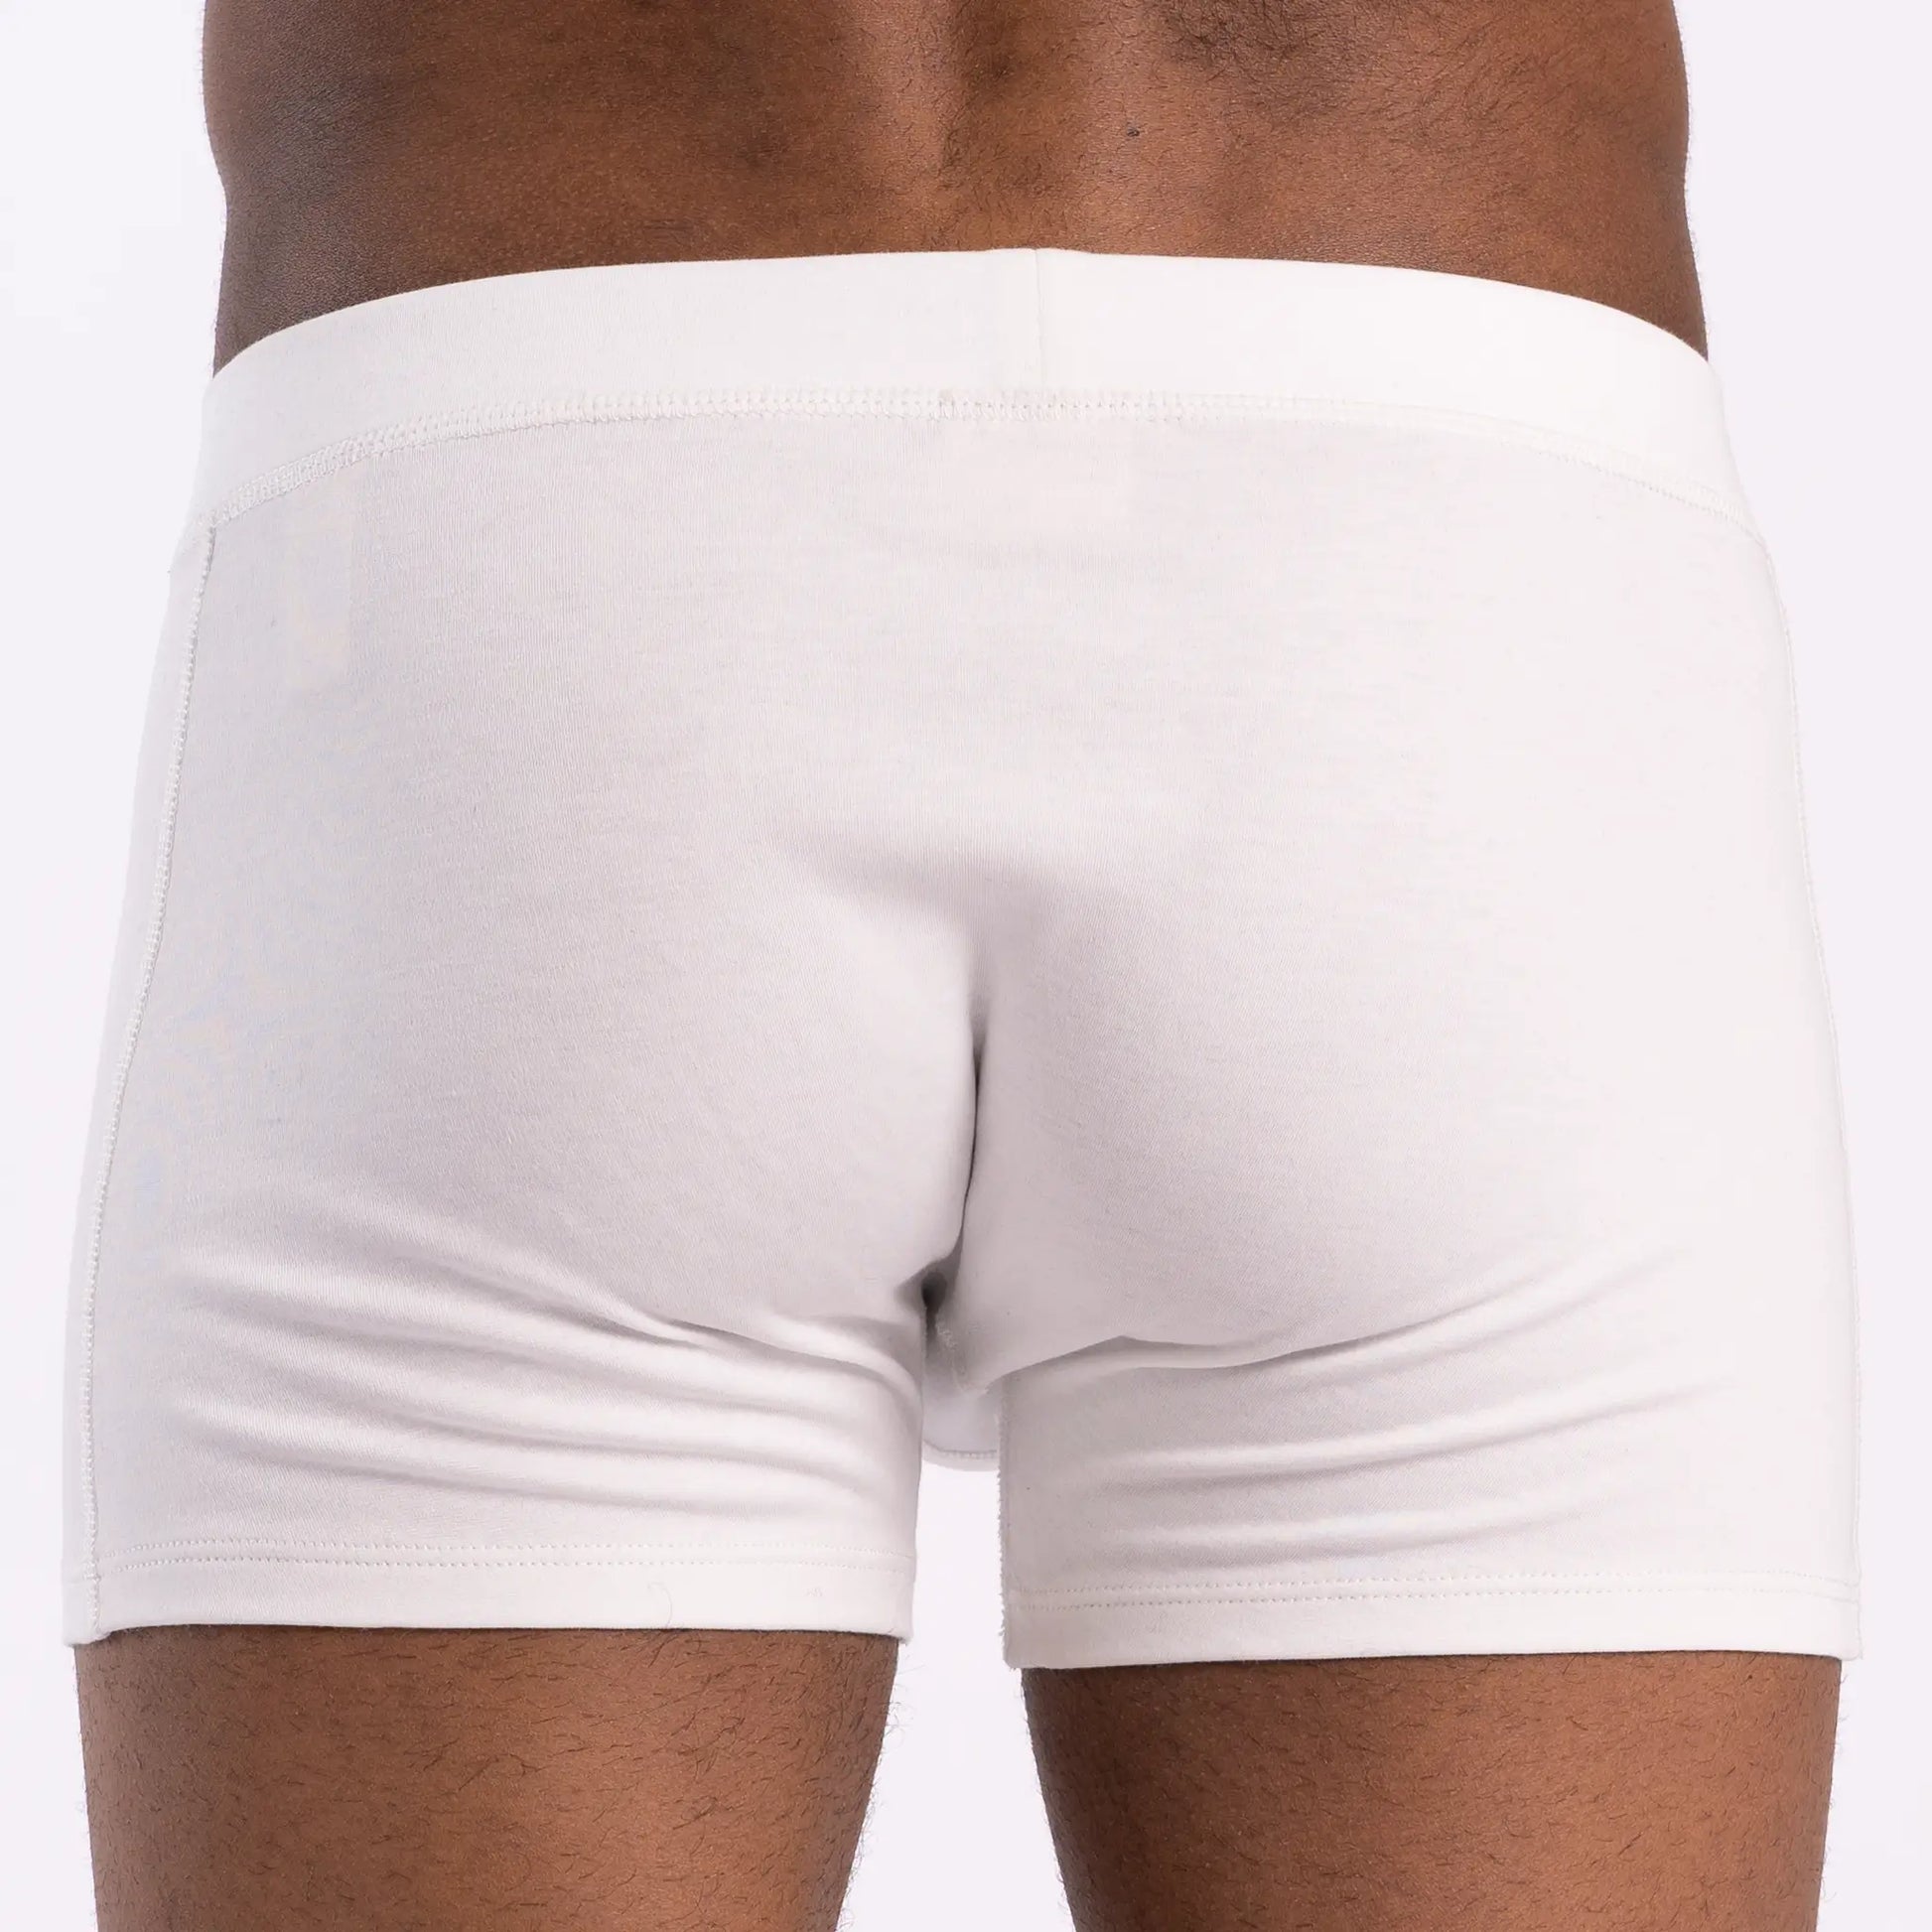 2018 Men's Underwear Four Jiao Pants Pure White Pure Cotton Light Color Big  Code Cotton Short Youth Underwear Men 3pcs/lot - Boxers - AliExpress